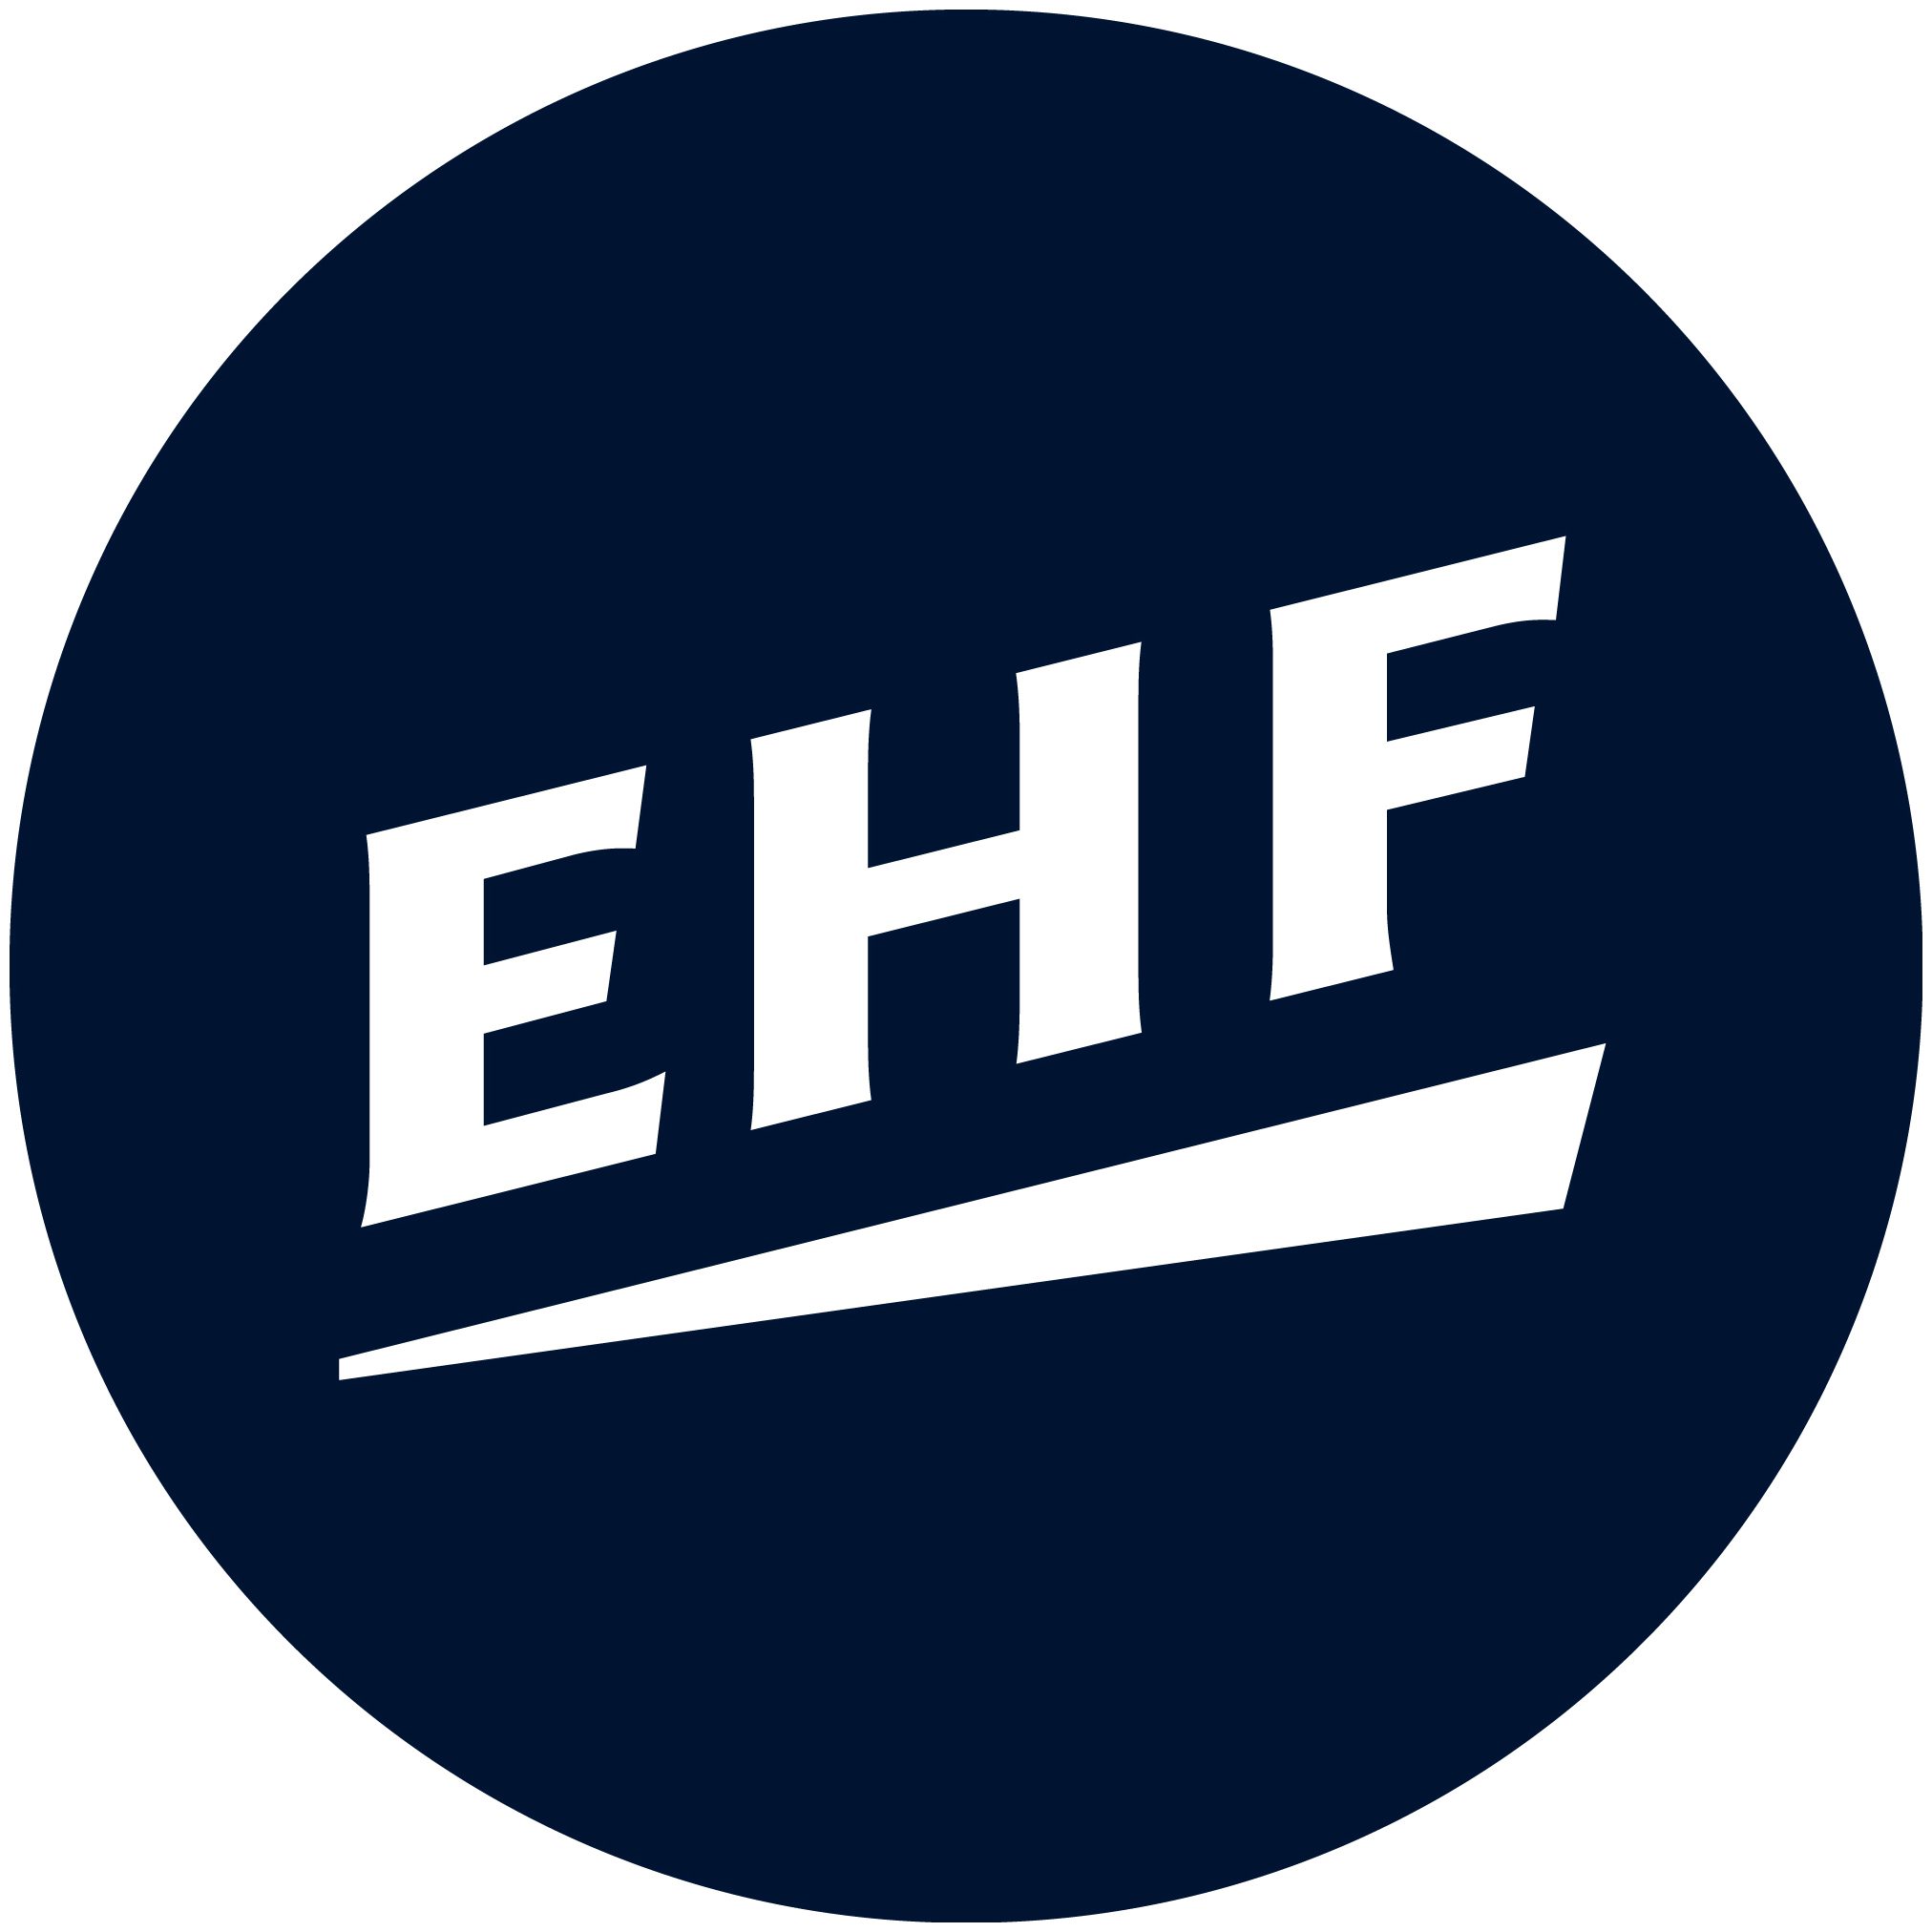 Gospodarza EHF EURO 2024 kobiet poznamy w styczniu 2020